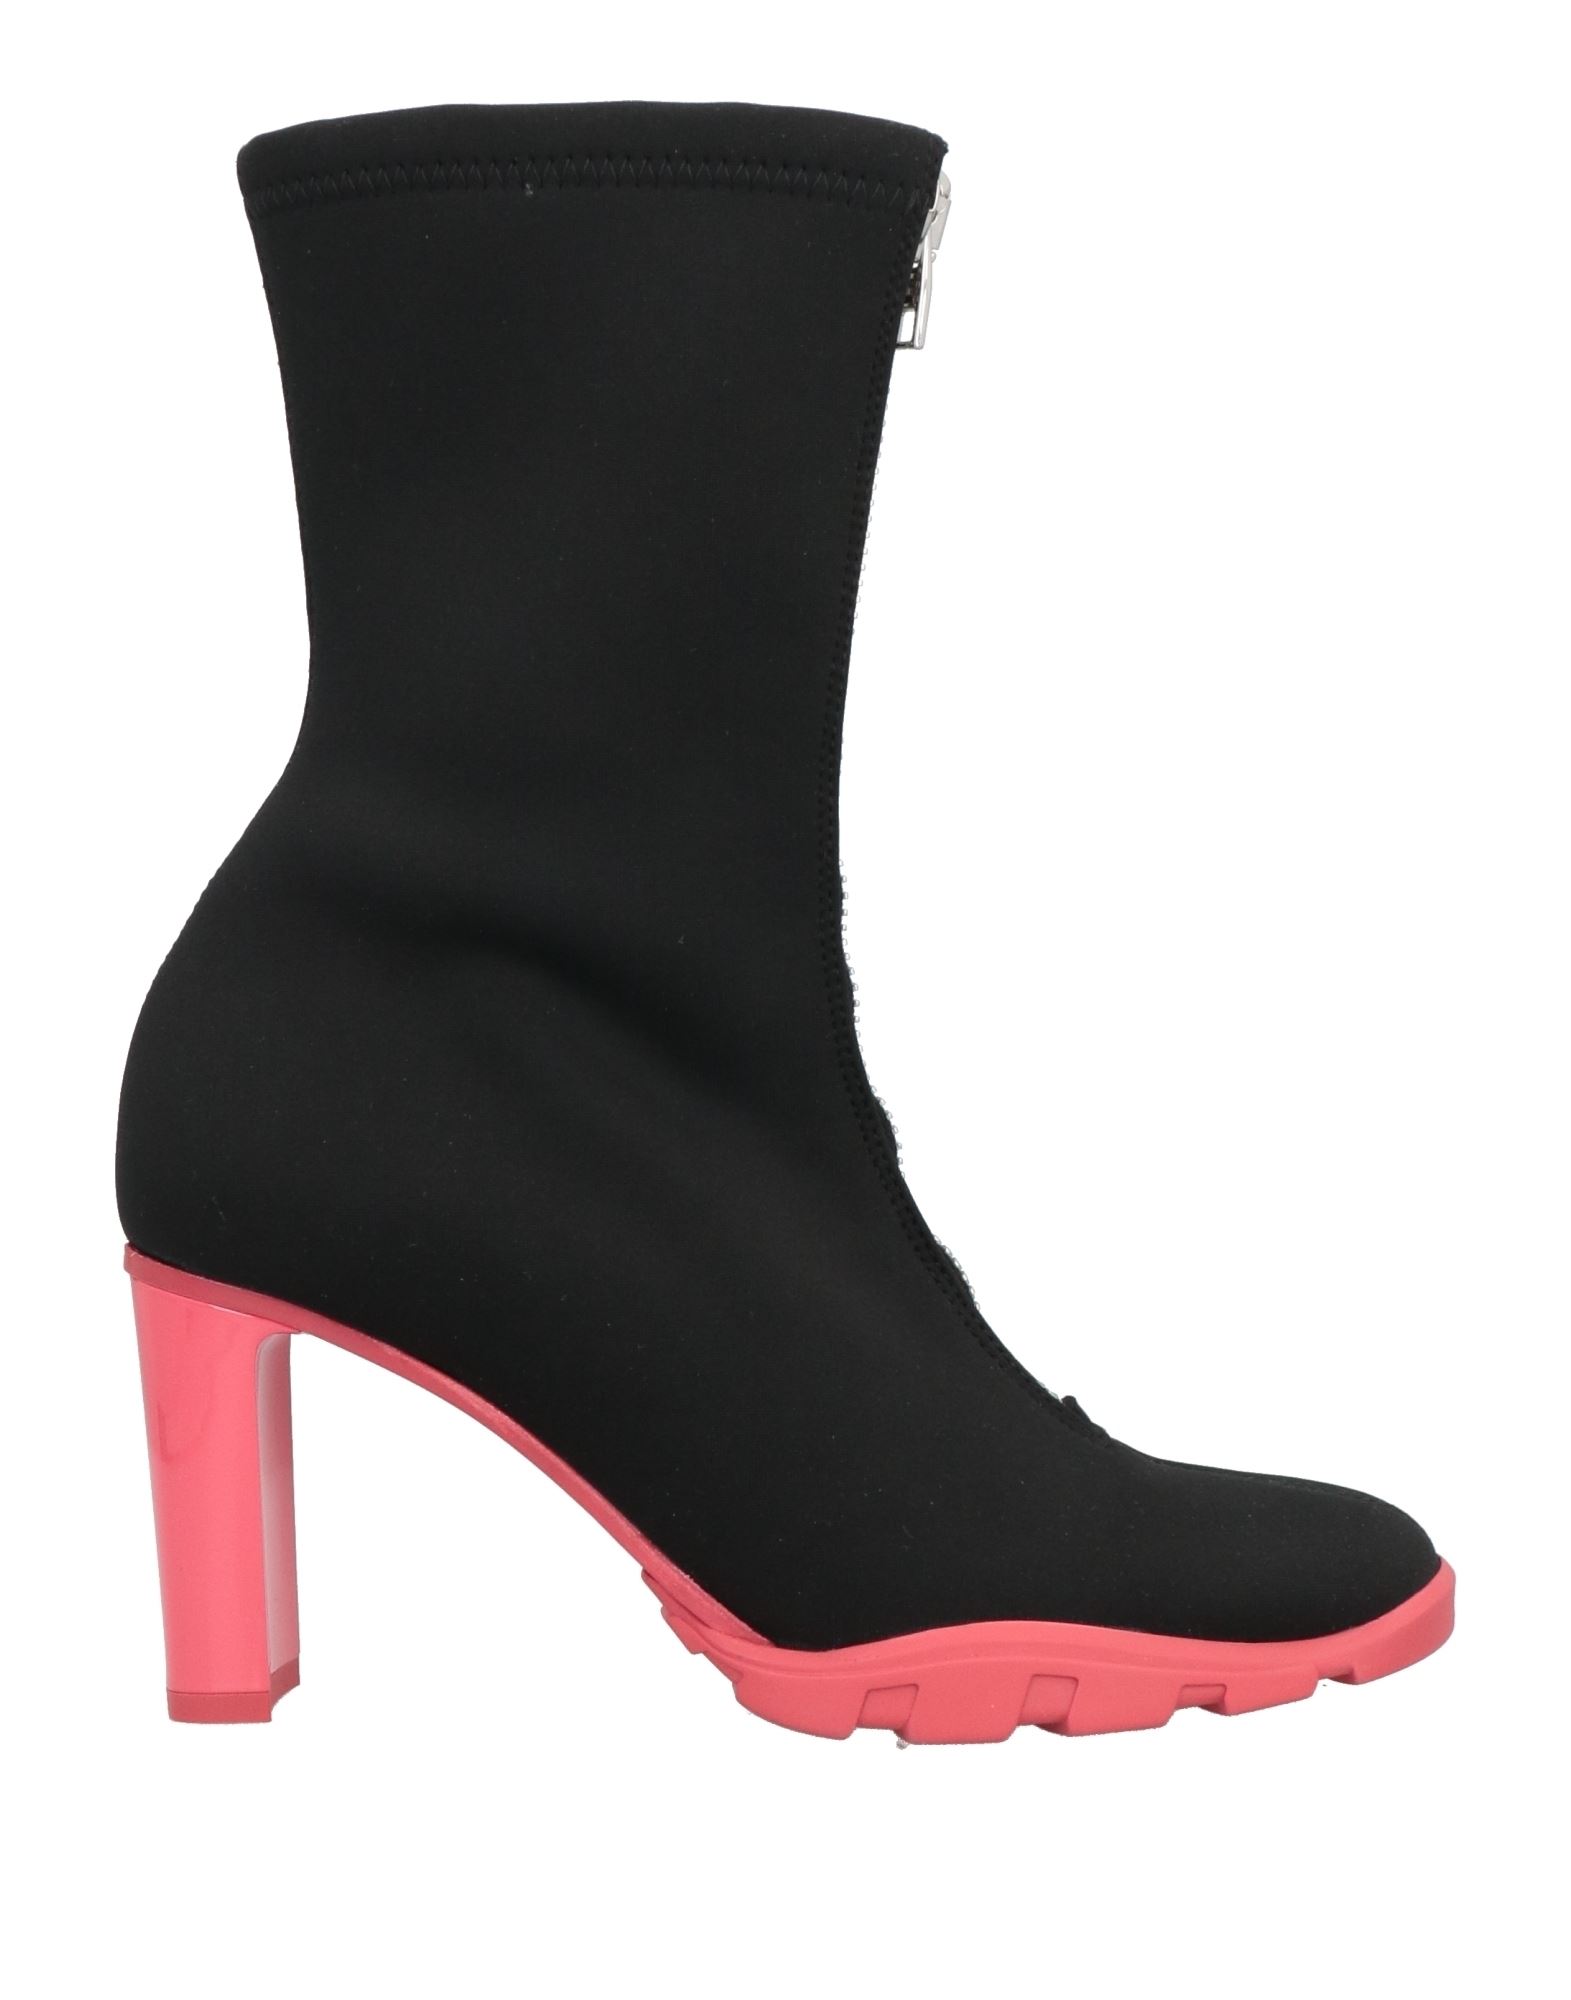 Shop Alexander Mcqueen Woman Ankle Boots Black Size 8 Textile Fibers